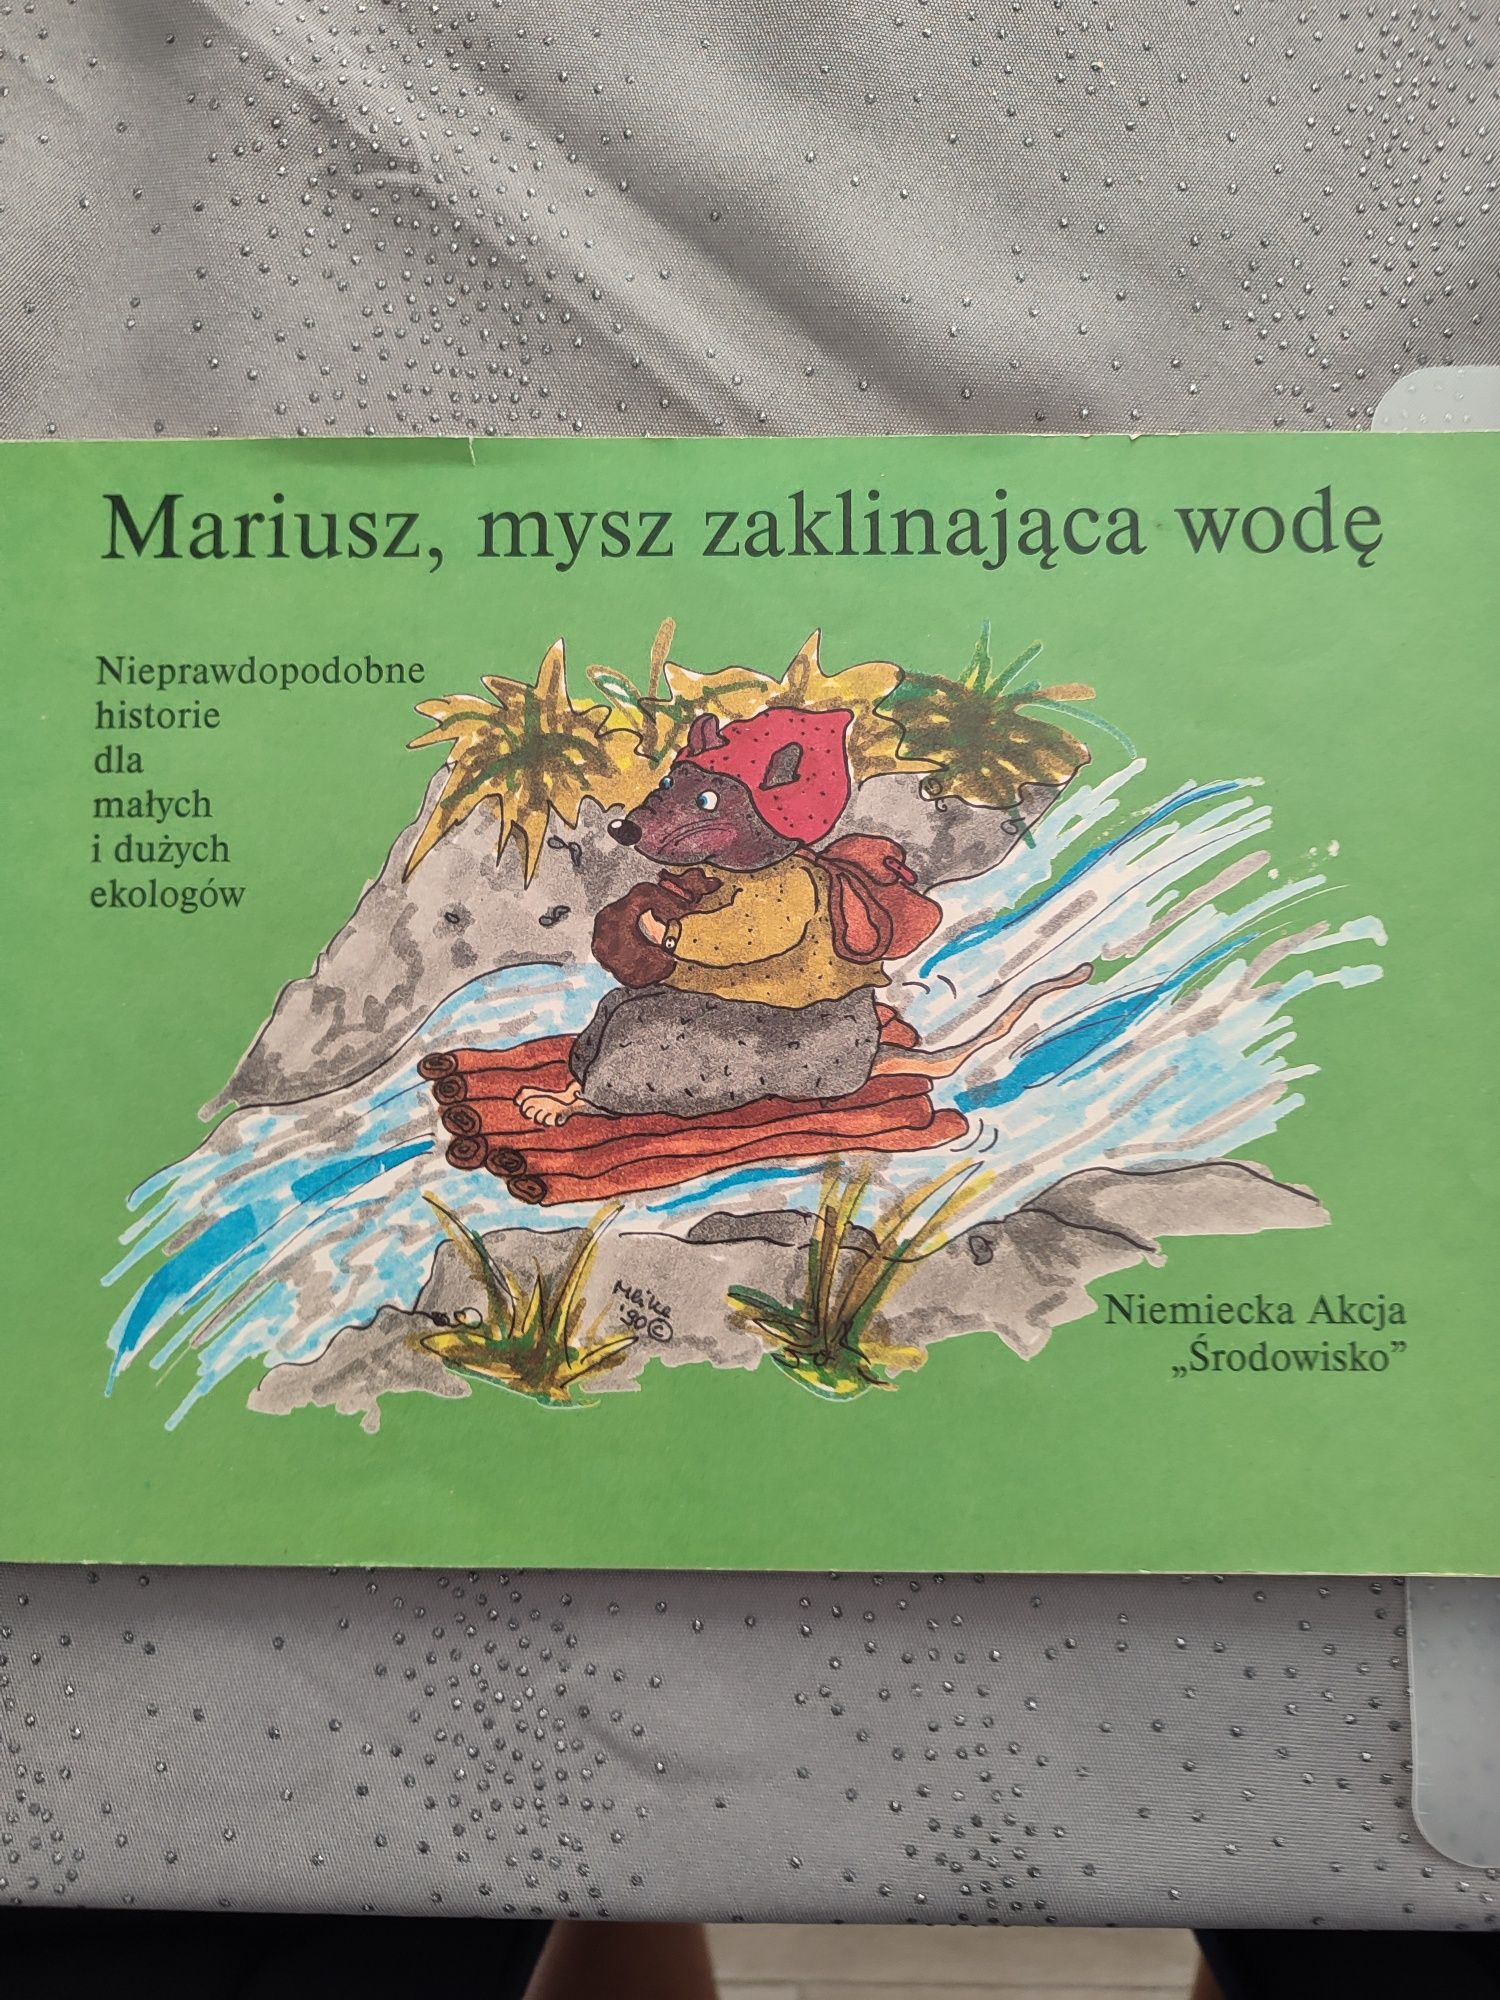 500 łamigłówek dla dzieci oraz książka "Mariusz, mysz zaklinająca wodę